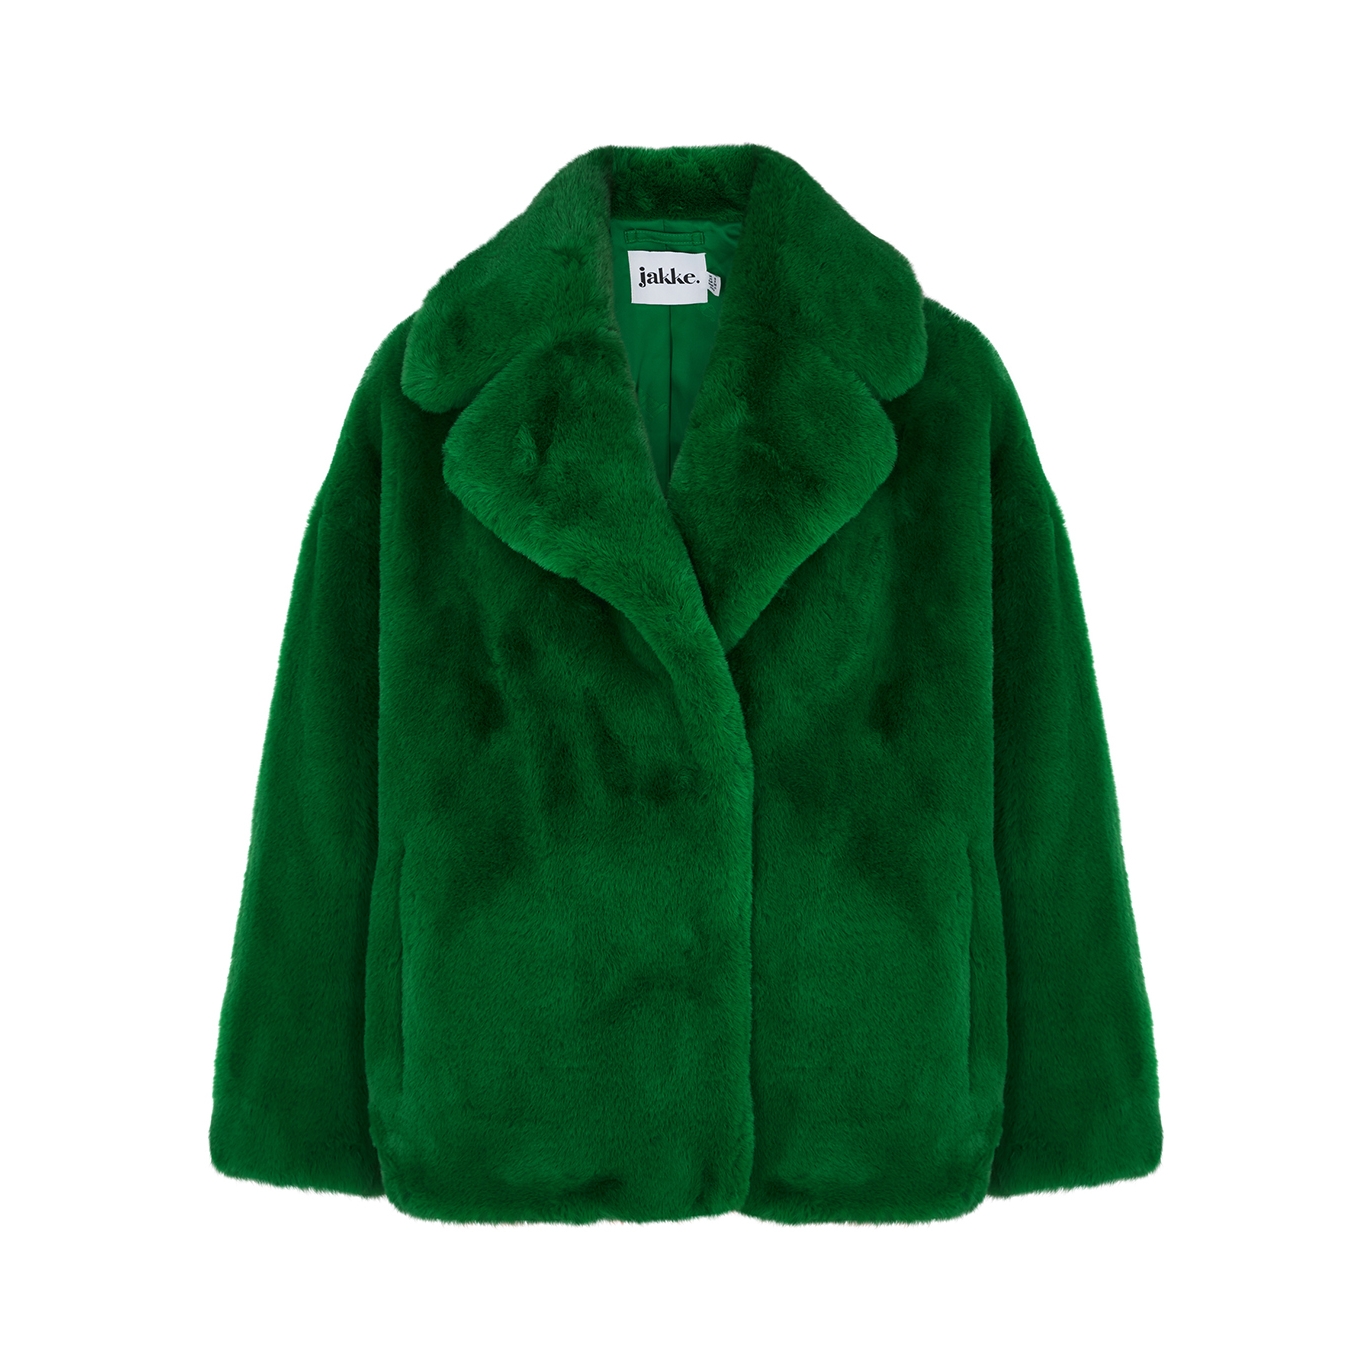 Jakke Rita Green Faux Fur Coat - S